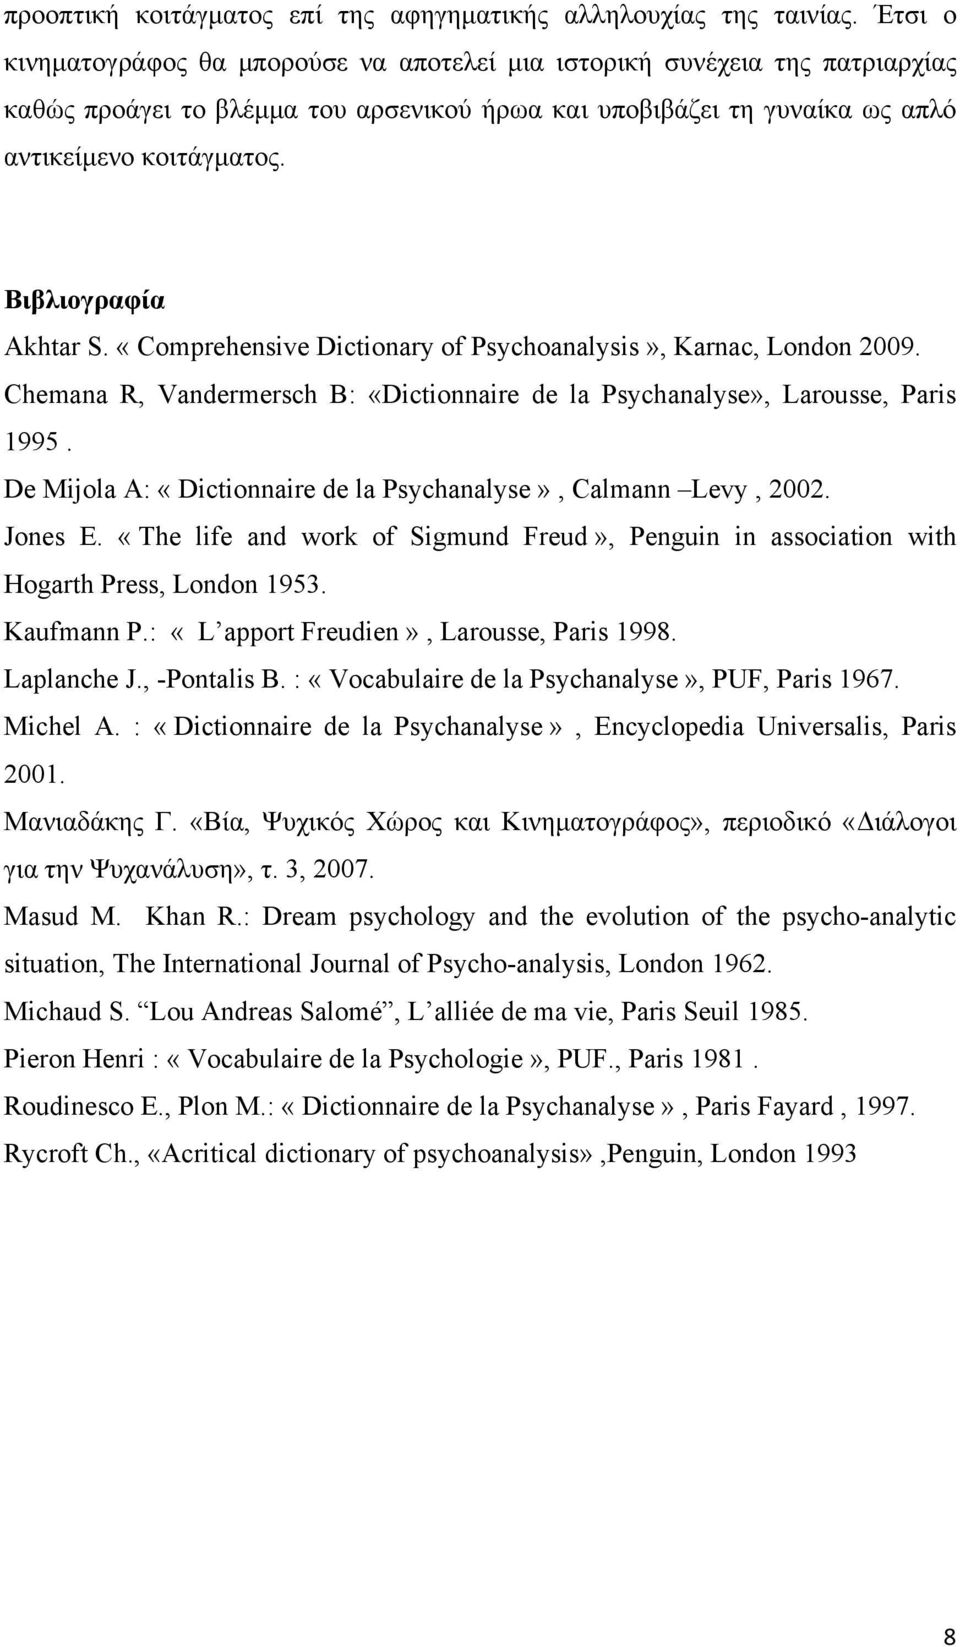 Βιβλιογραφία Akhtar S. «Comprehensive Dictionary of Psychoanalysis», Karnac, London 2009. Chemana R, Vandermersch B: «Dictionnaire de la Psychanalyse», Larousse, Paris 1995.